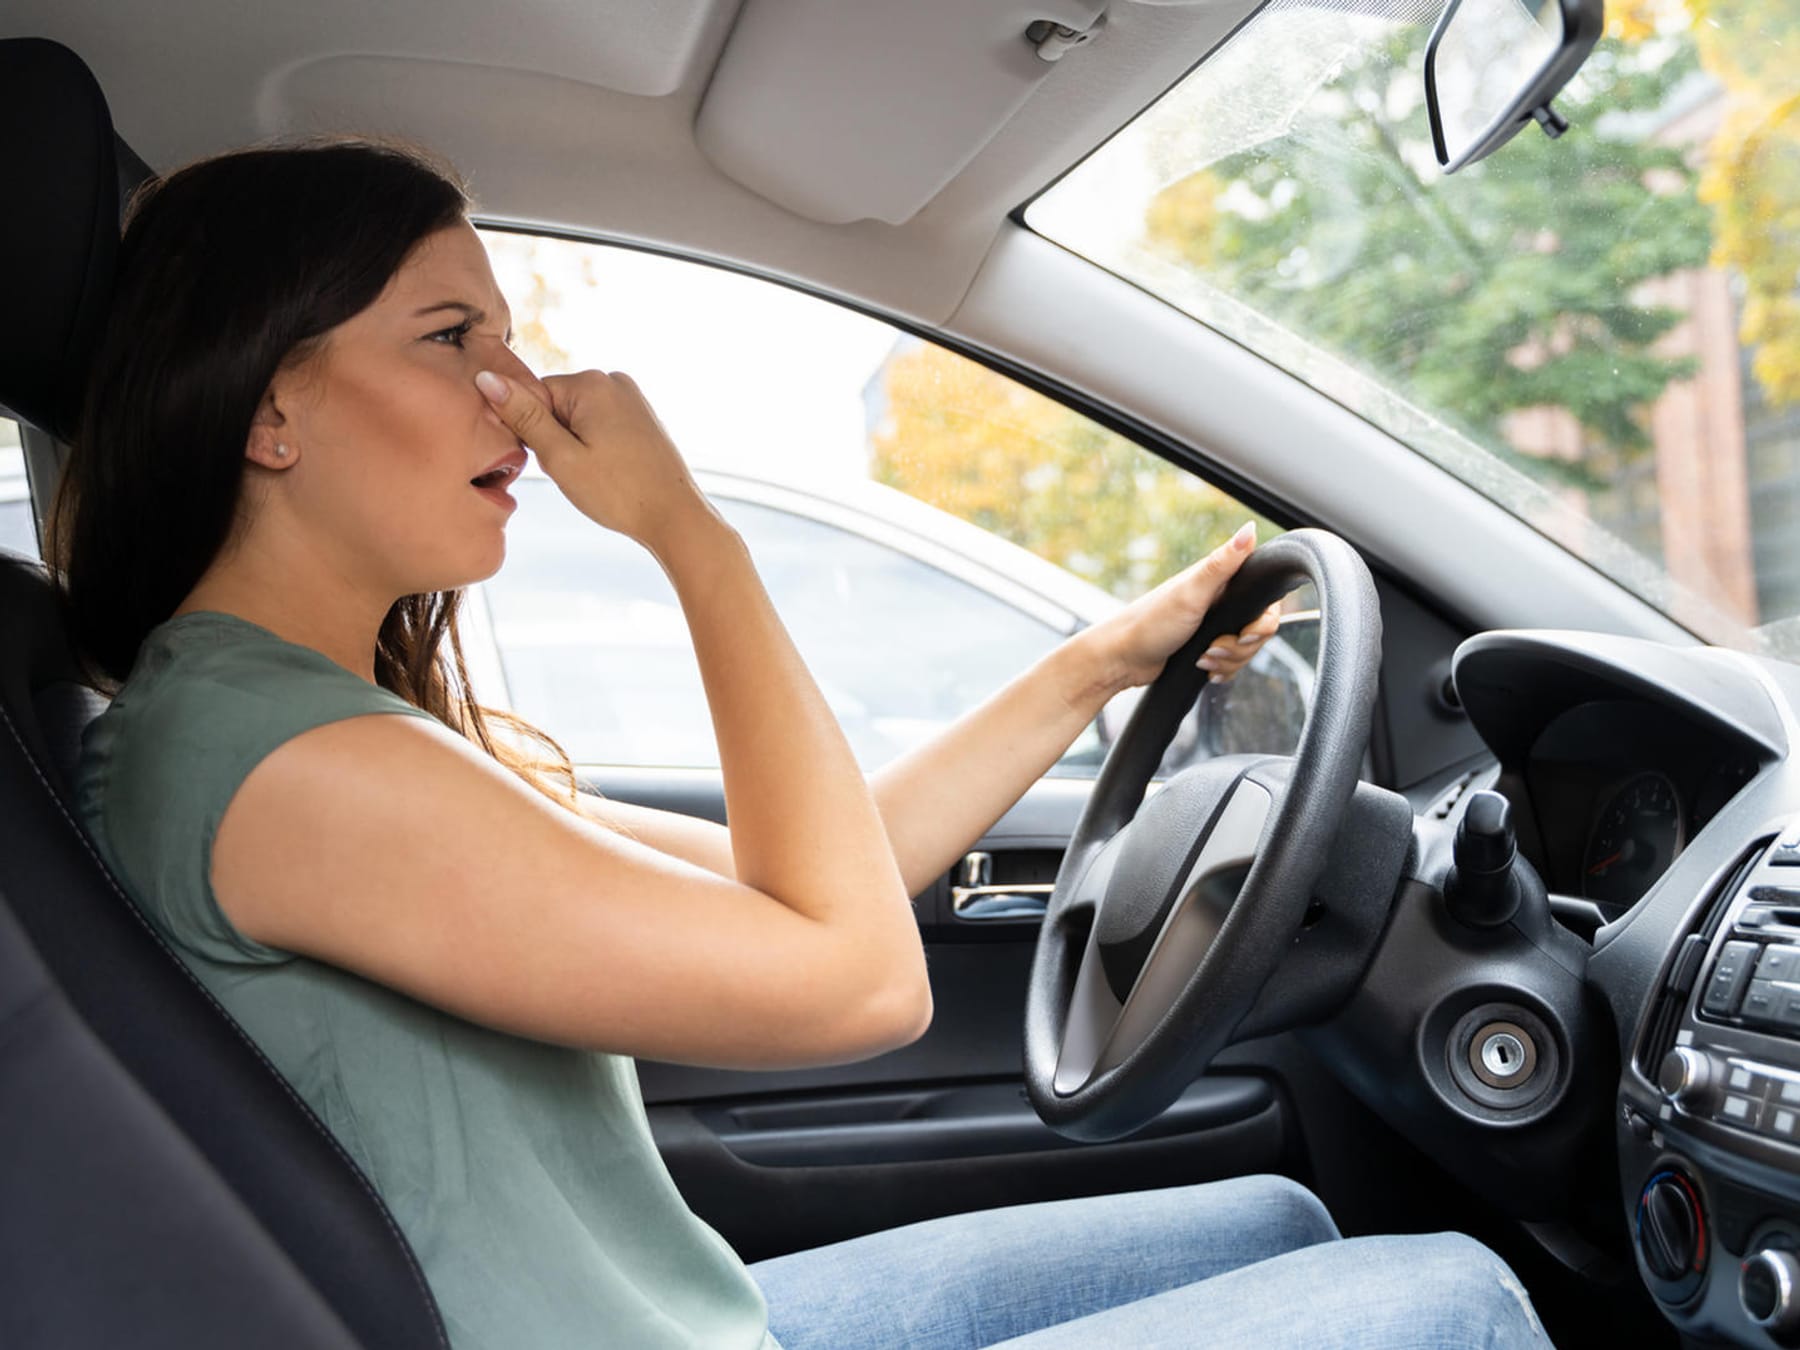 Üble Gerüche im Auto: Das hilft wirklich dagegen